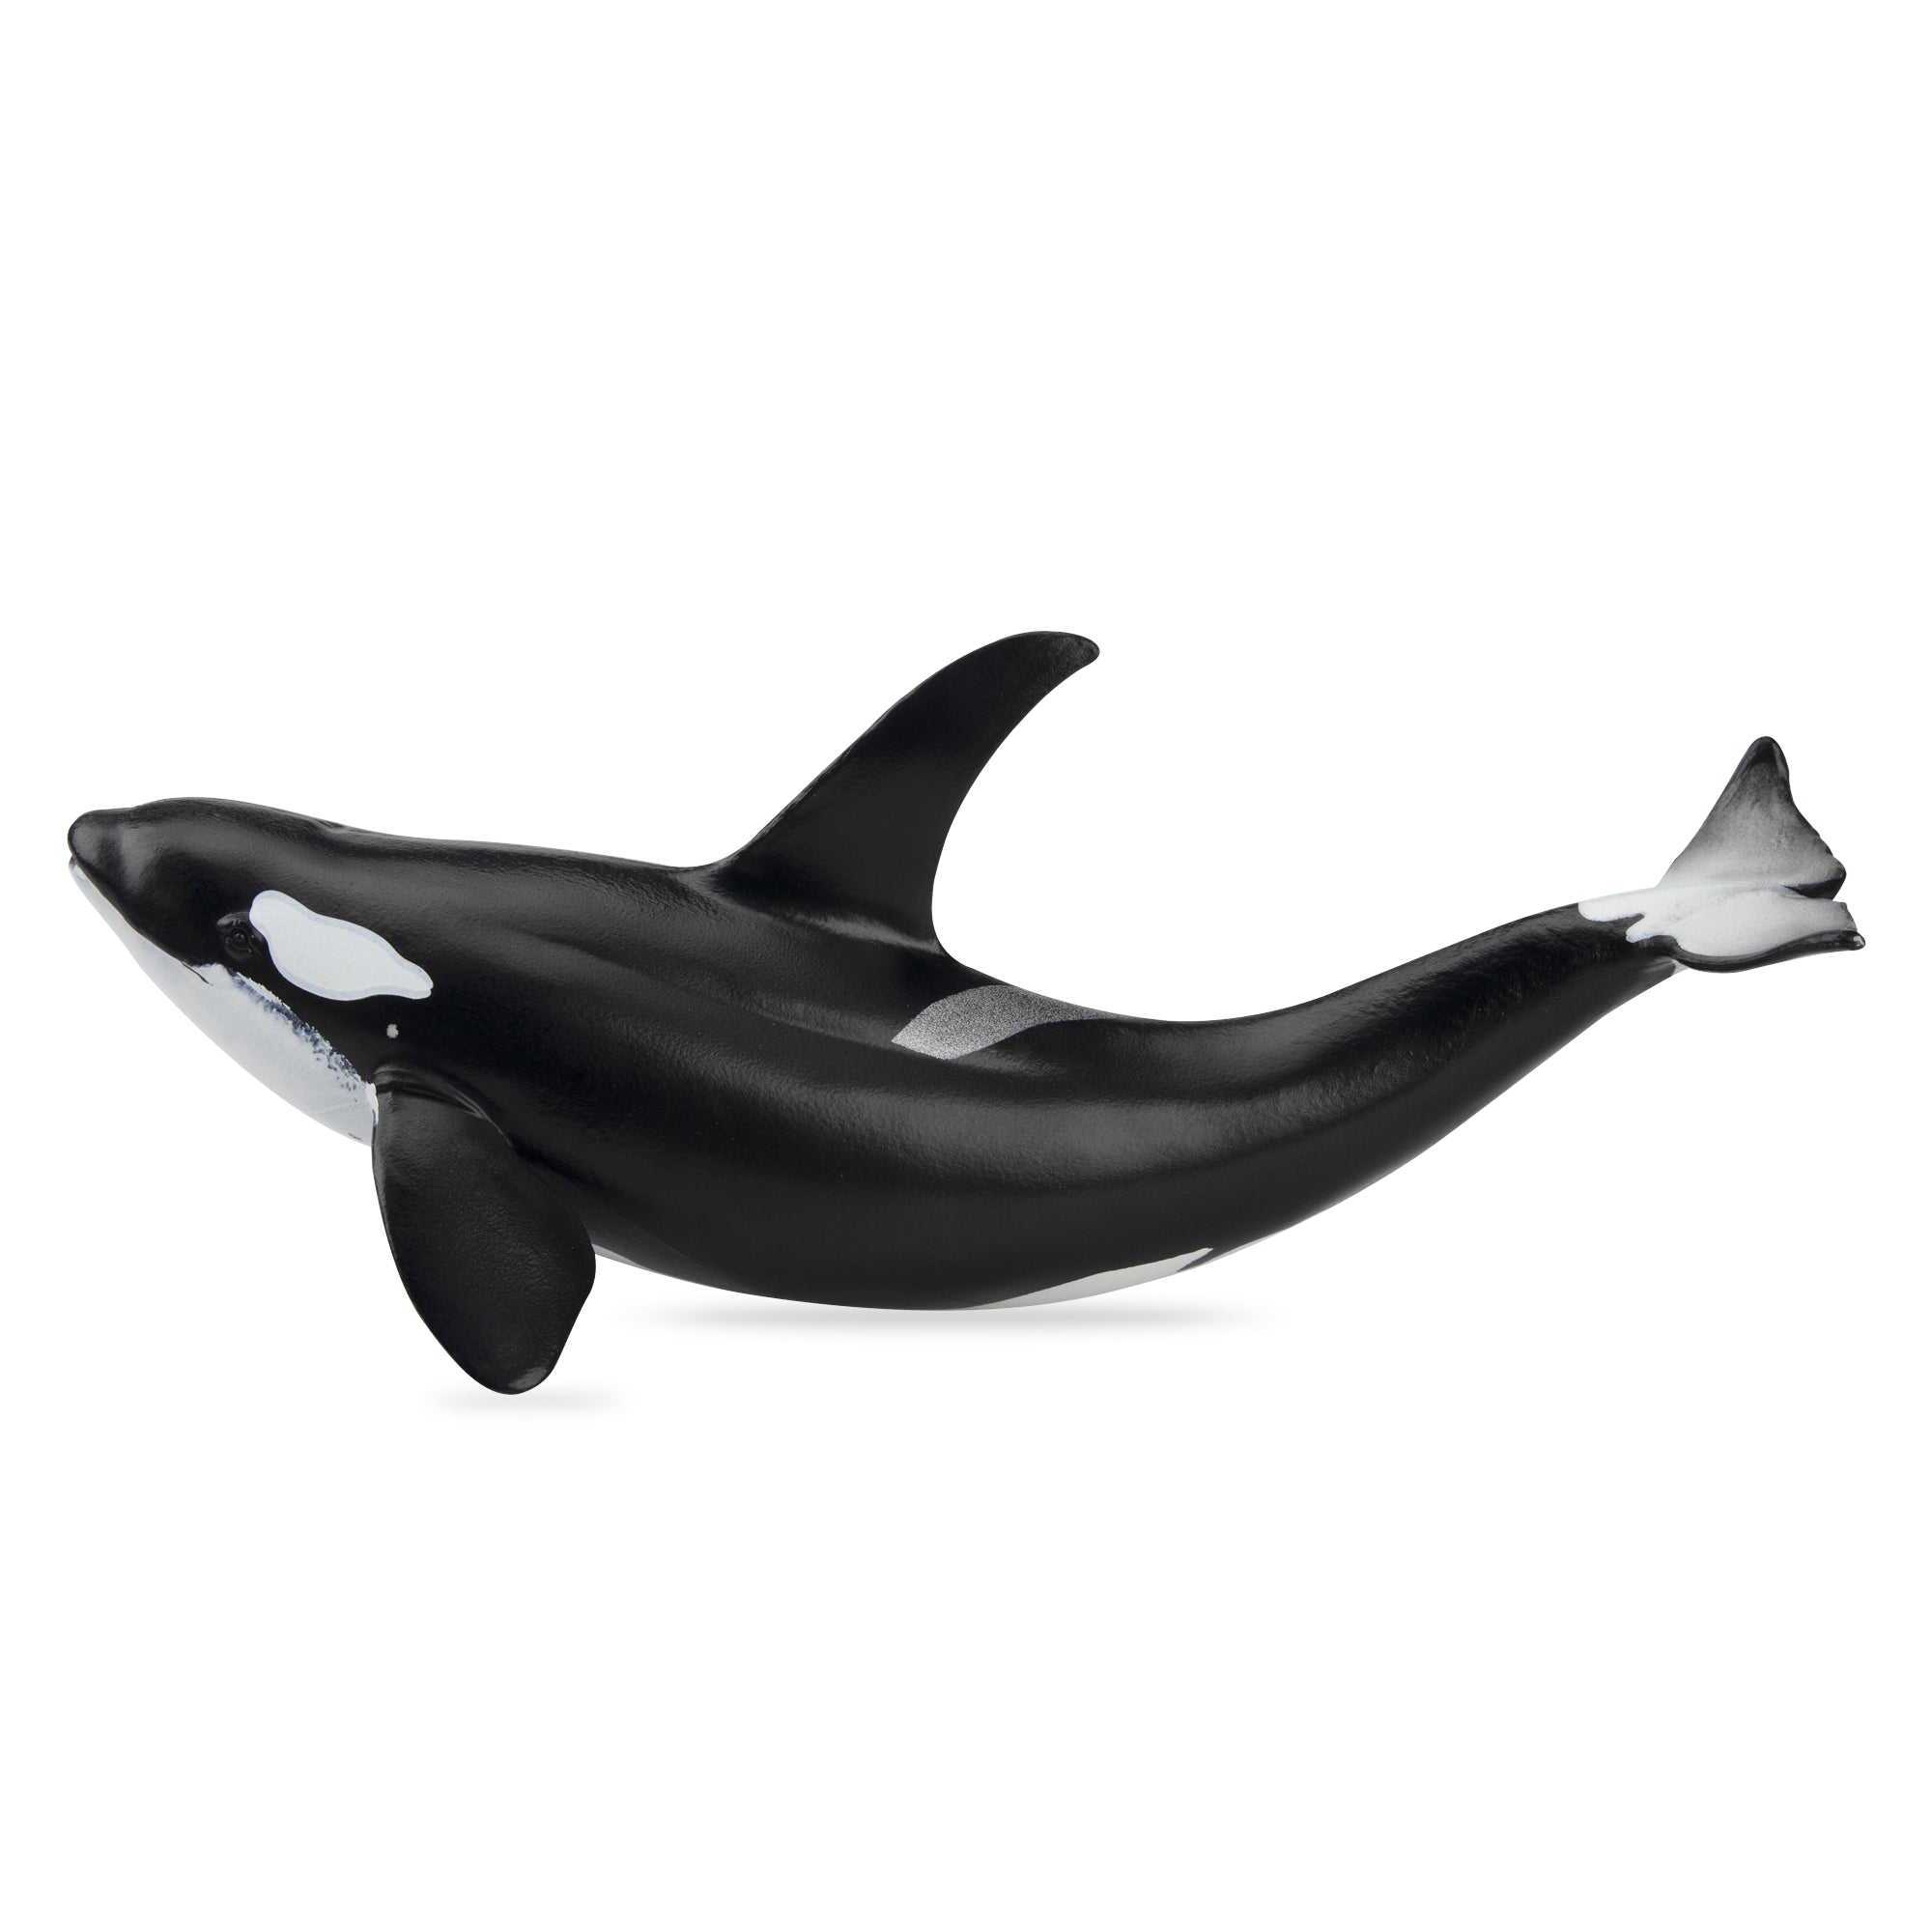 Toymany Orca Figurine Toy